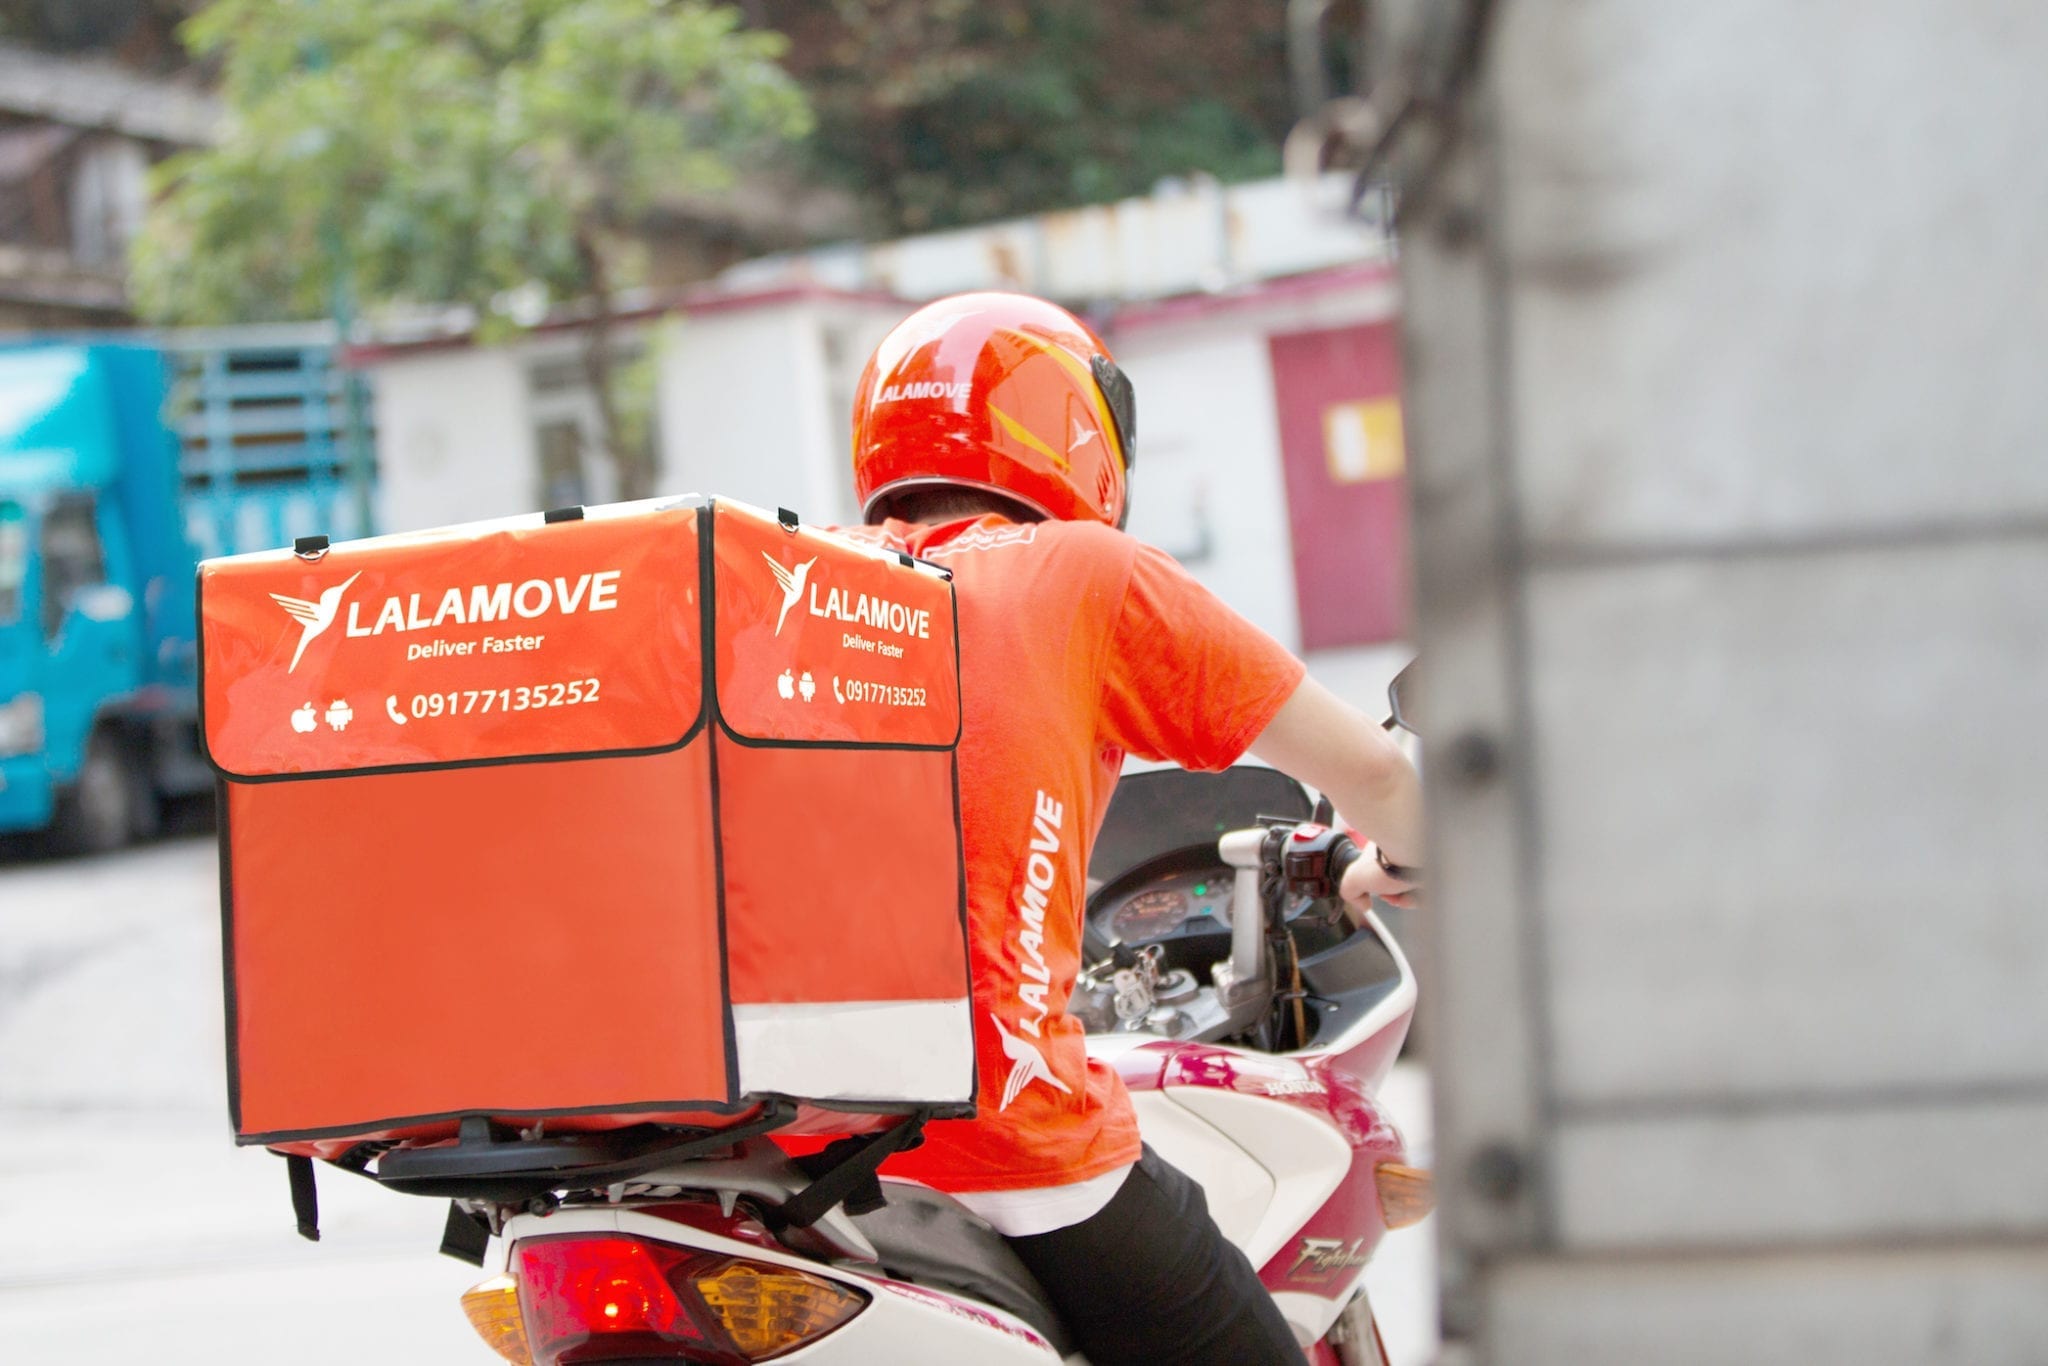 Nền tảng giao hàng LalaMove của Hồng Kông đang tăng gấp đôi tốc độ tăng trưởng tại Việt Nam